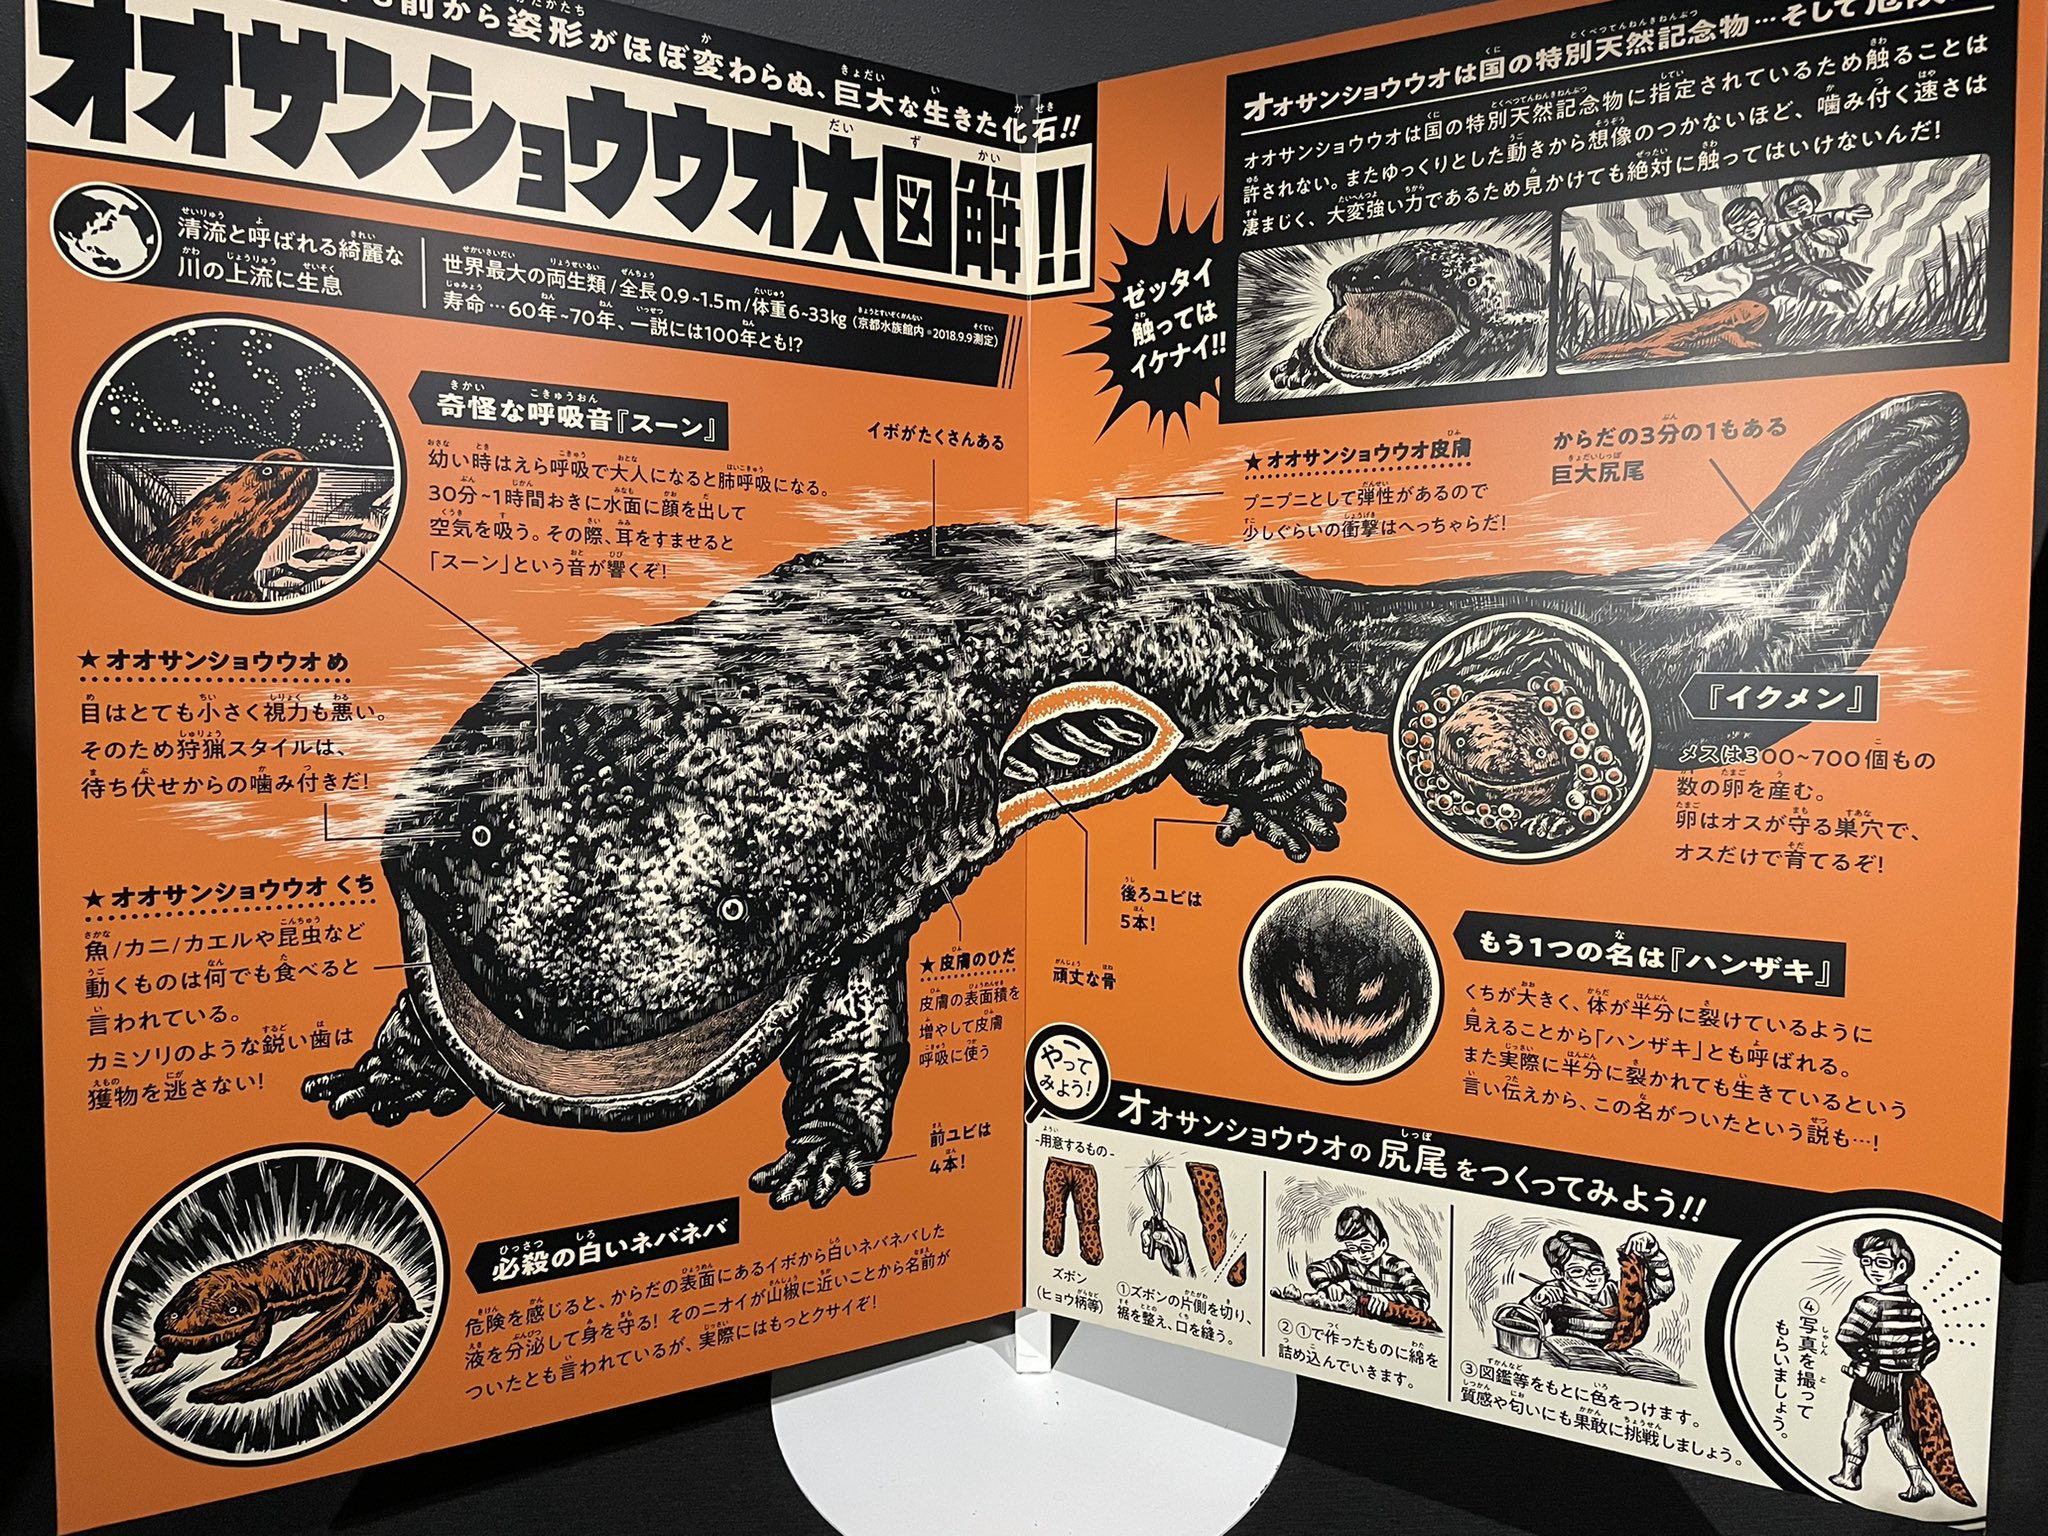 京都水族館のオオサンショウウオブースが凄い ファン層をがっちり掴むデザインに見惚れる 話題の画像プラス